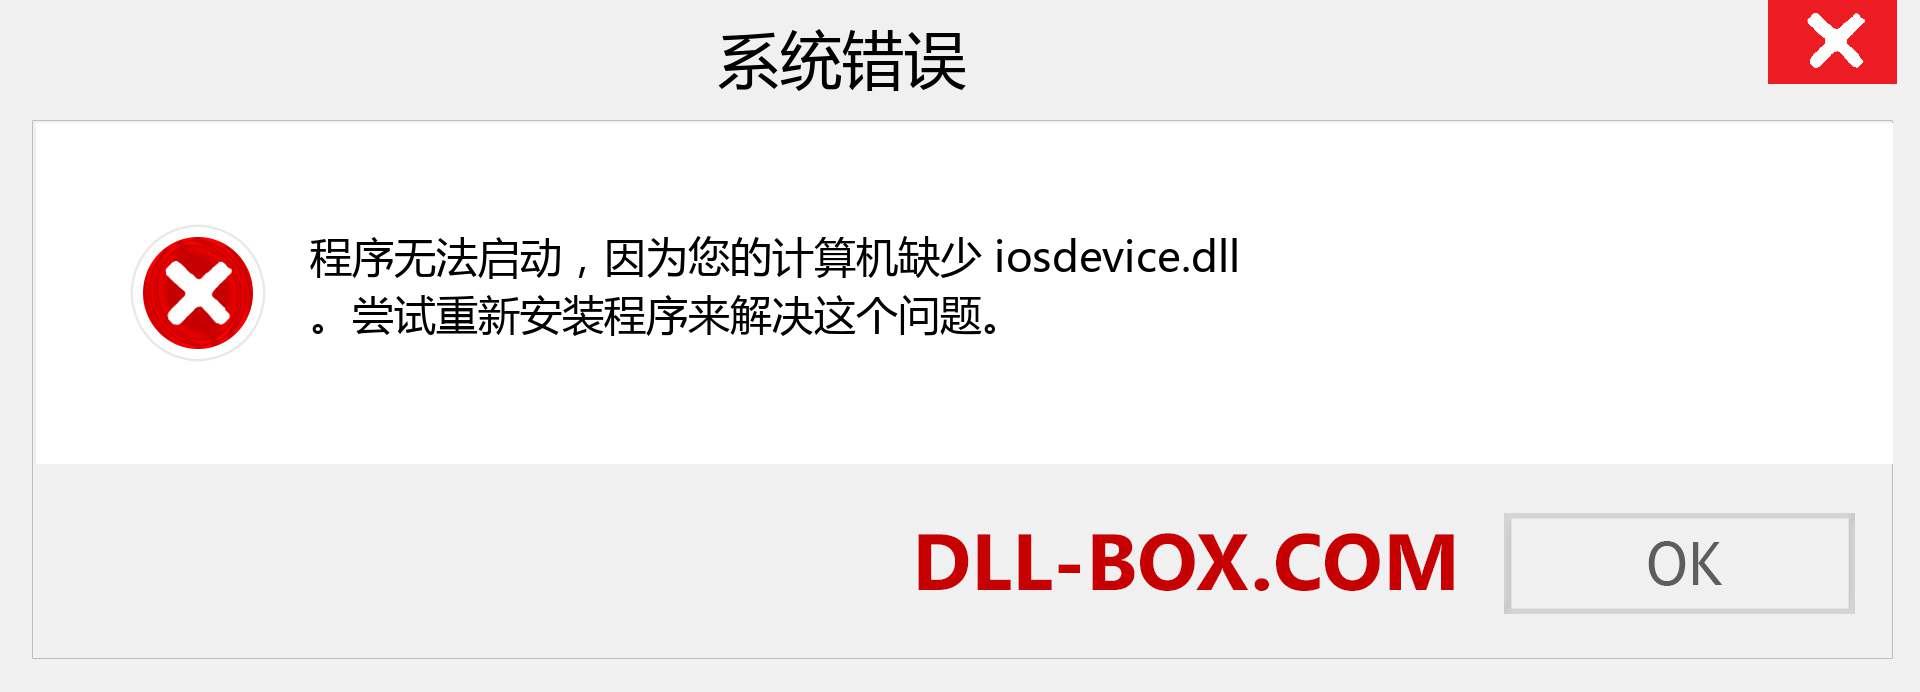 iosdevice.dll 文件丢失？。 适用于 Windows 7、8、10 的下载 - 修复 Windows、照片、图像上的 iosdevice dll 丢失错误